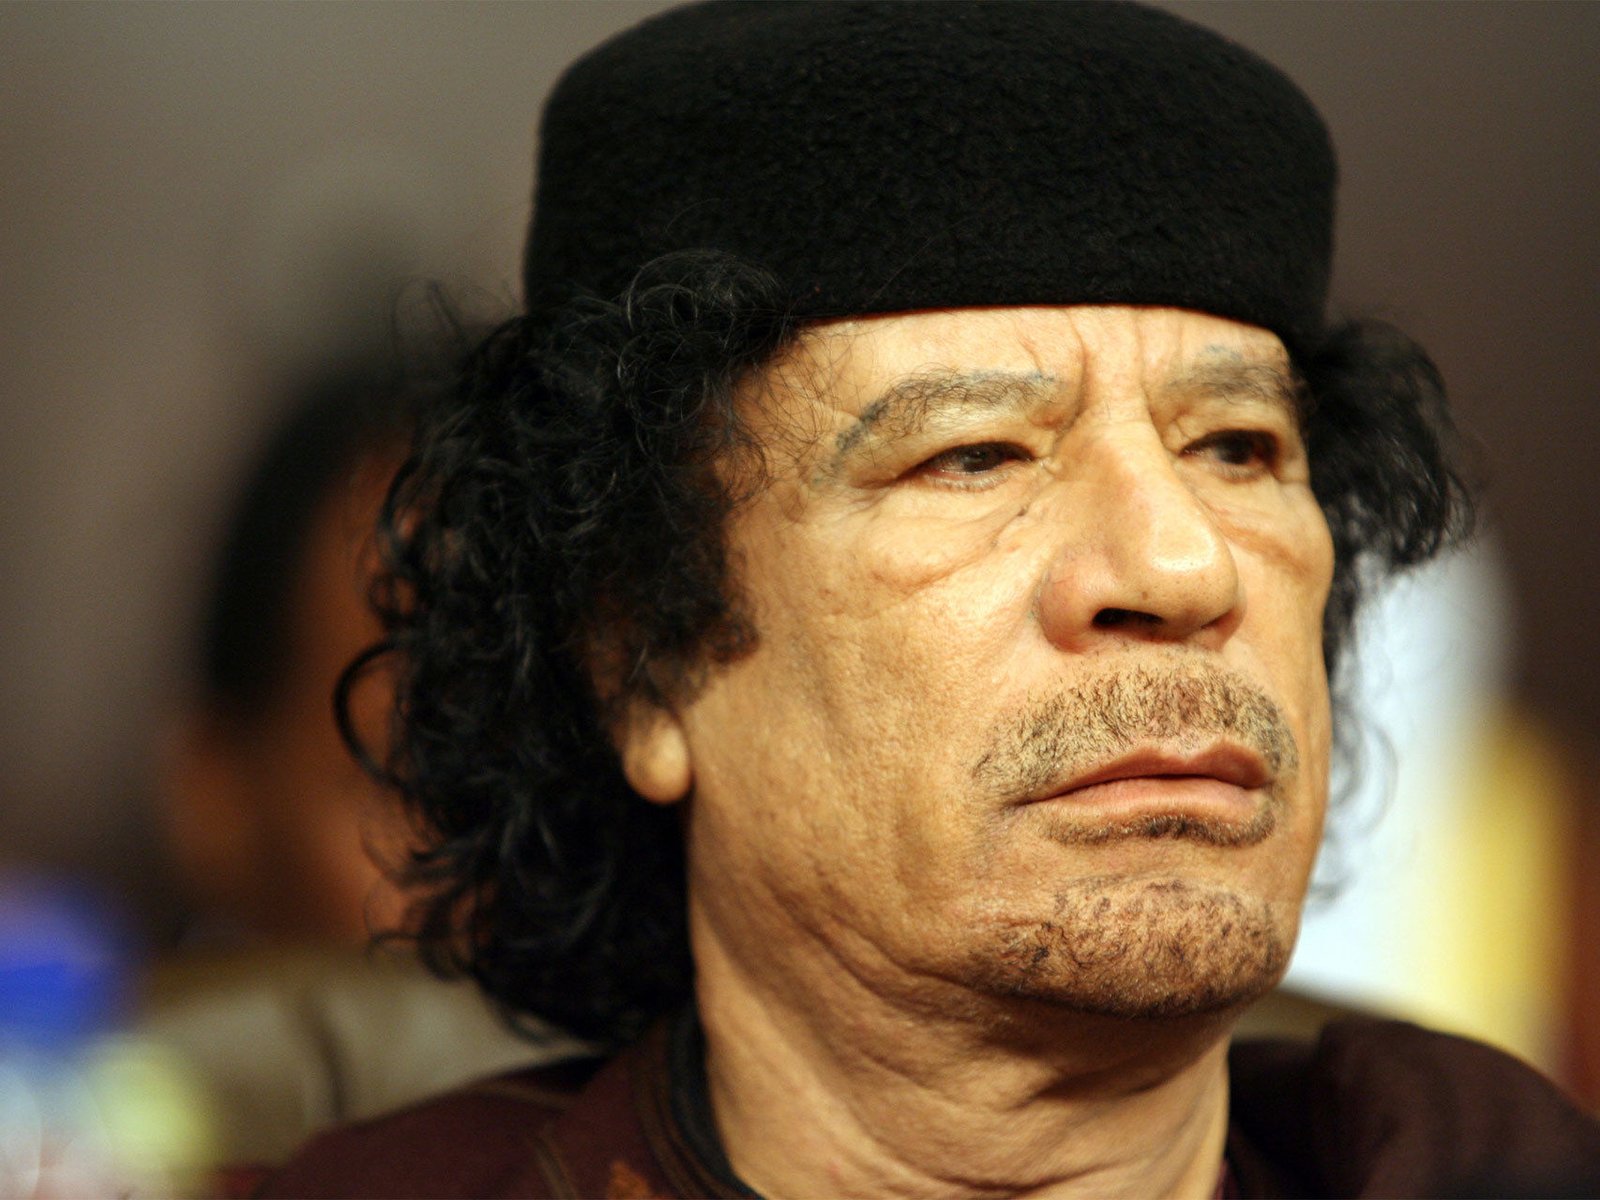 El mayor líder espiritual que haya tenido Libia